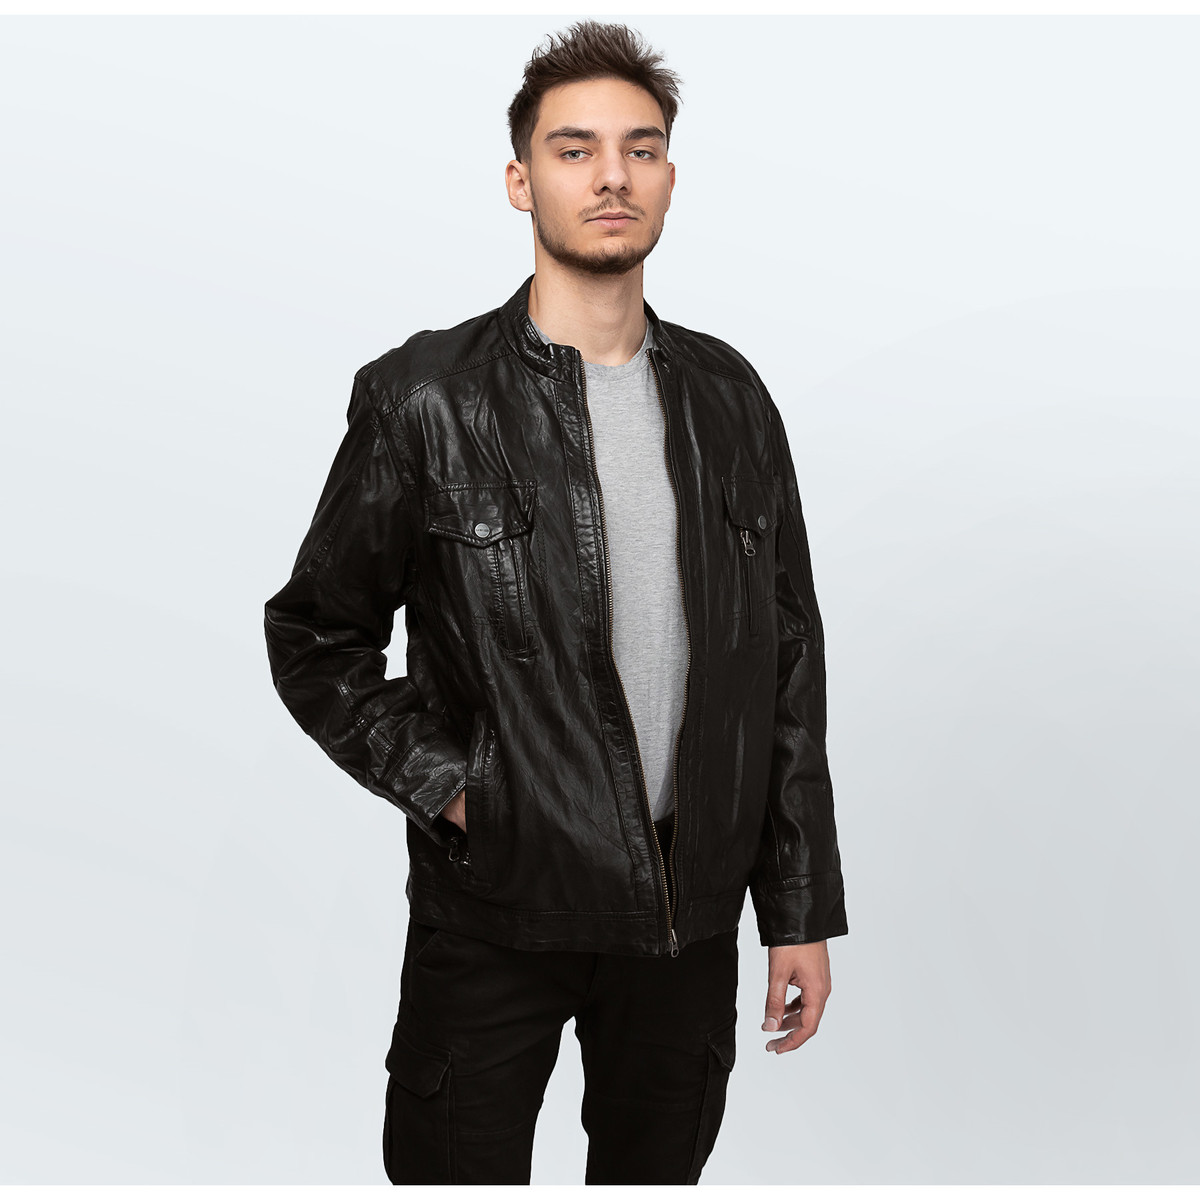 Σακάκι/Blazers Cameleon Men's Leather Jacket K2922